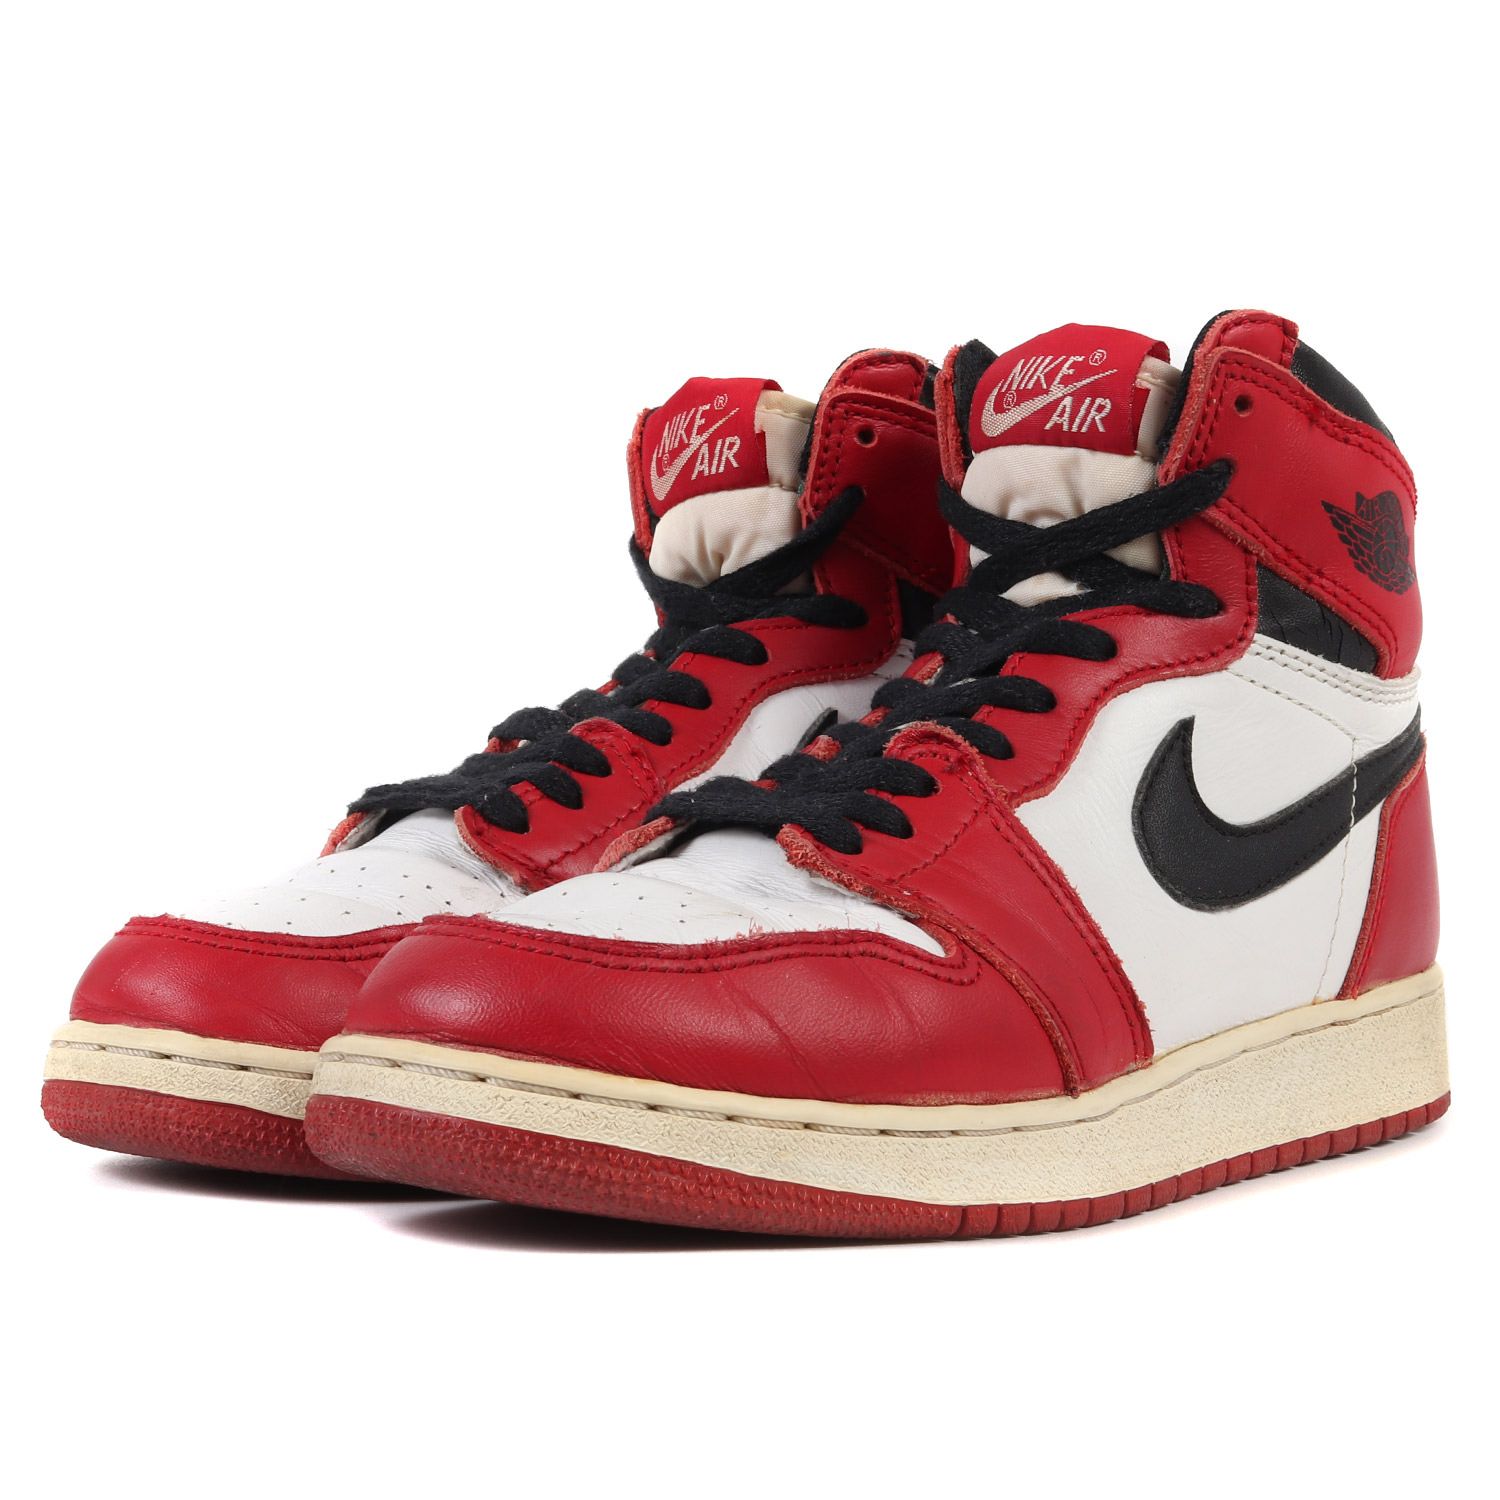 1994 Nike air Jordan 1 Chicago bg 94 ogshatte